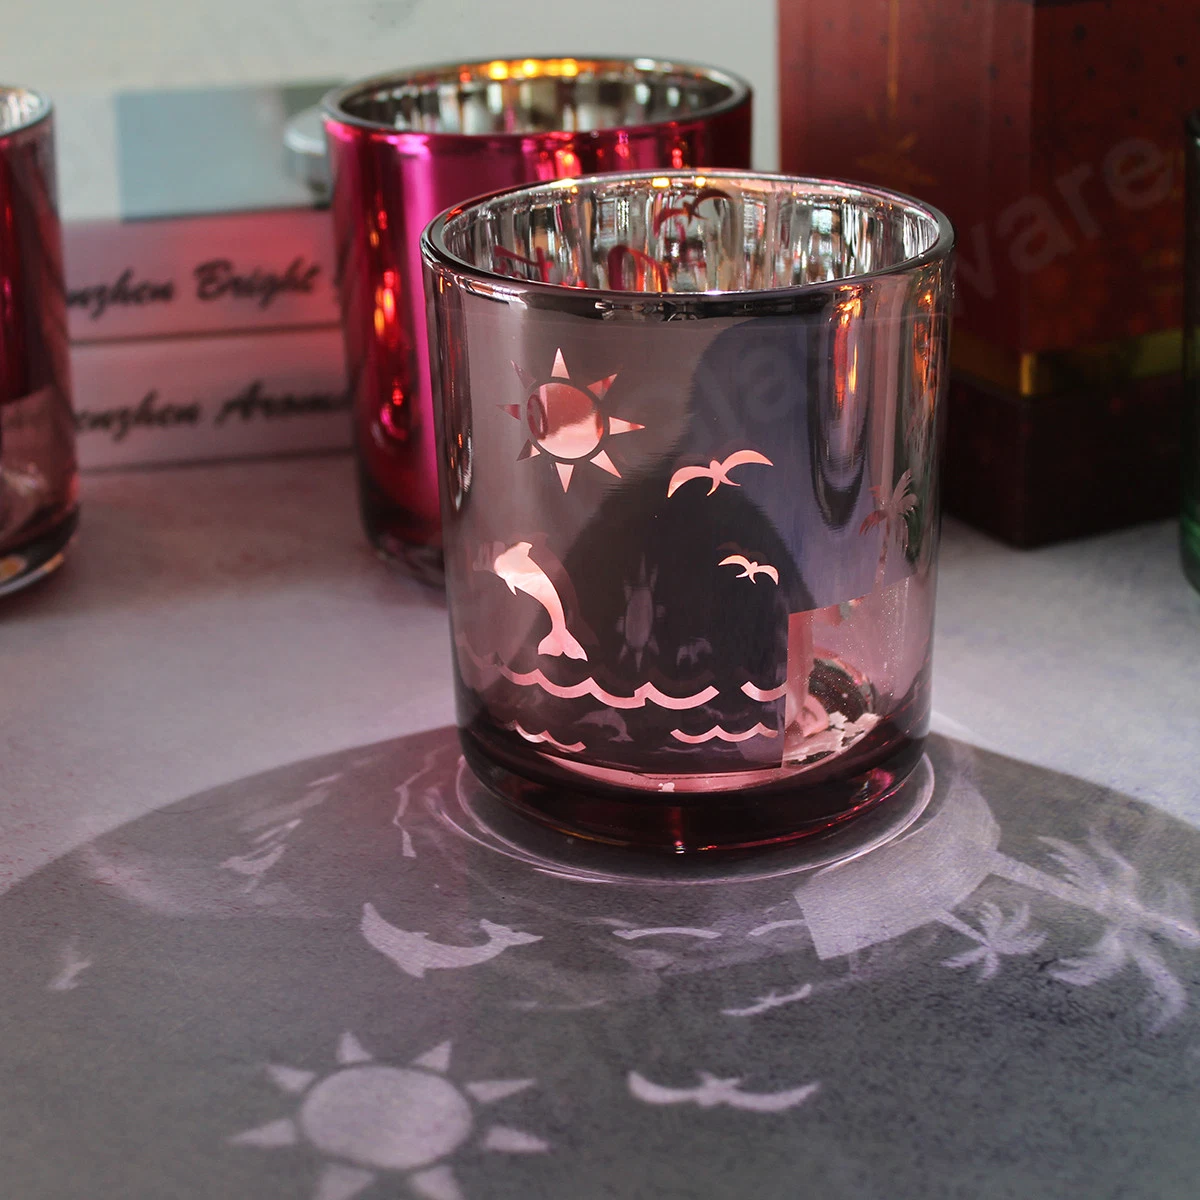 شمعة زجاجية مخصصة لتعليمات التنفيذ الذاتي للأجراس دورق رومانسي كاندل عيد الحب الحامل